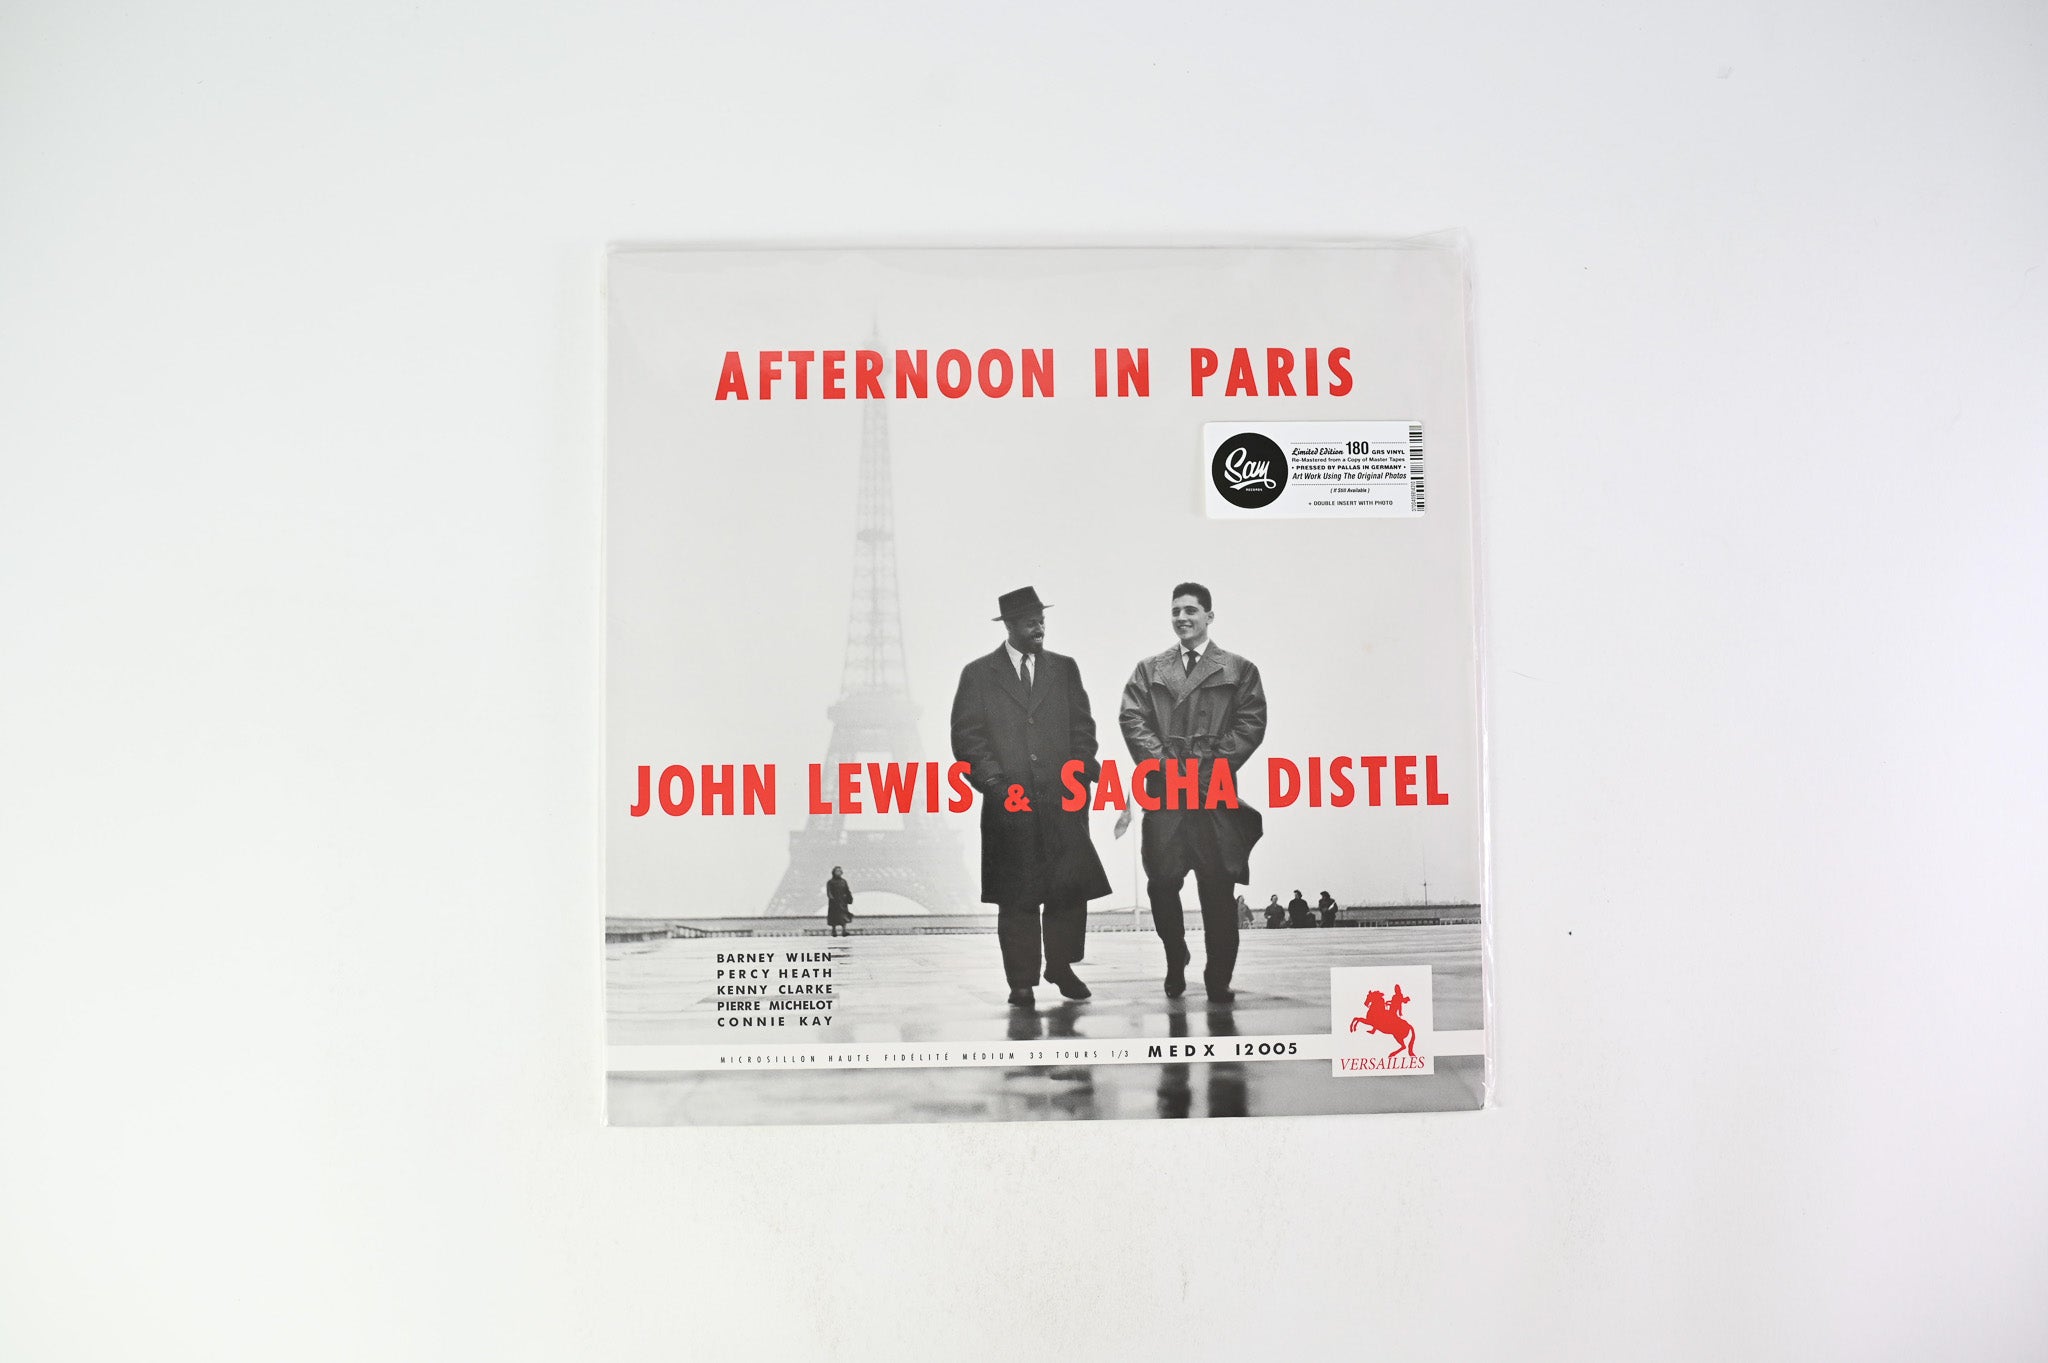 John Lewis - Afternoon In Paris on SAM Mono 180 Gram Reissue